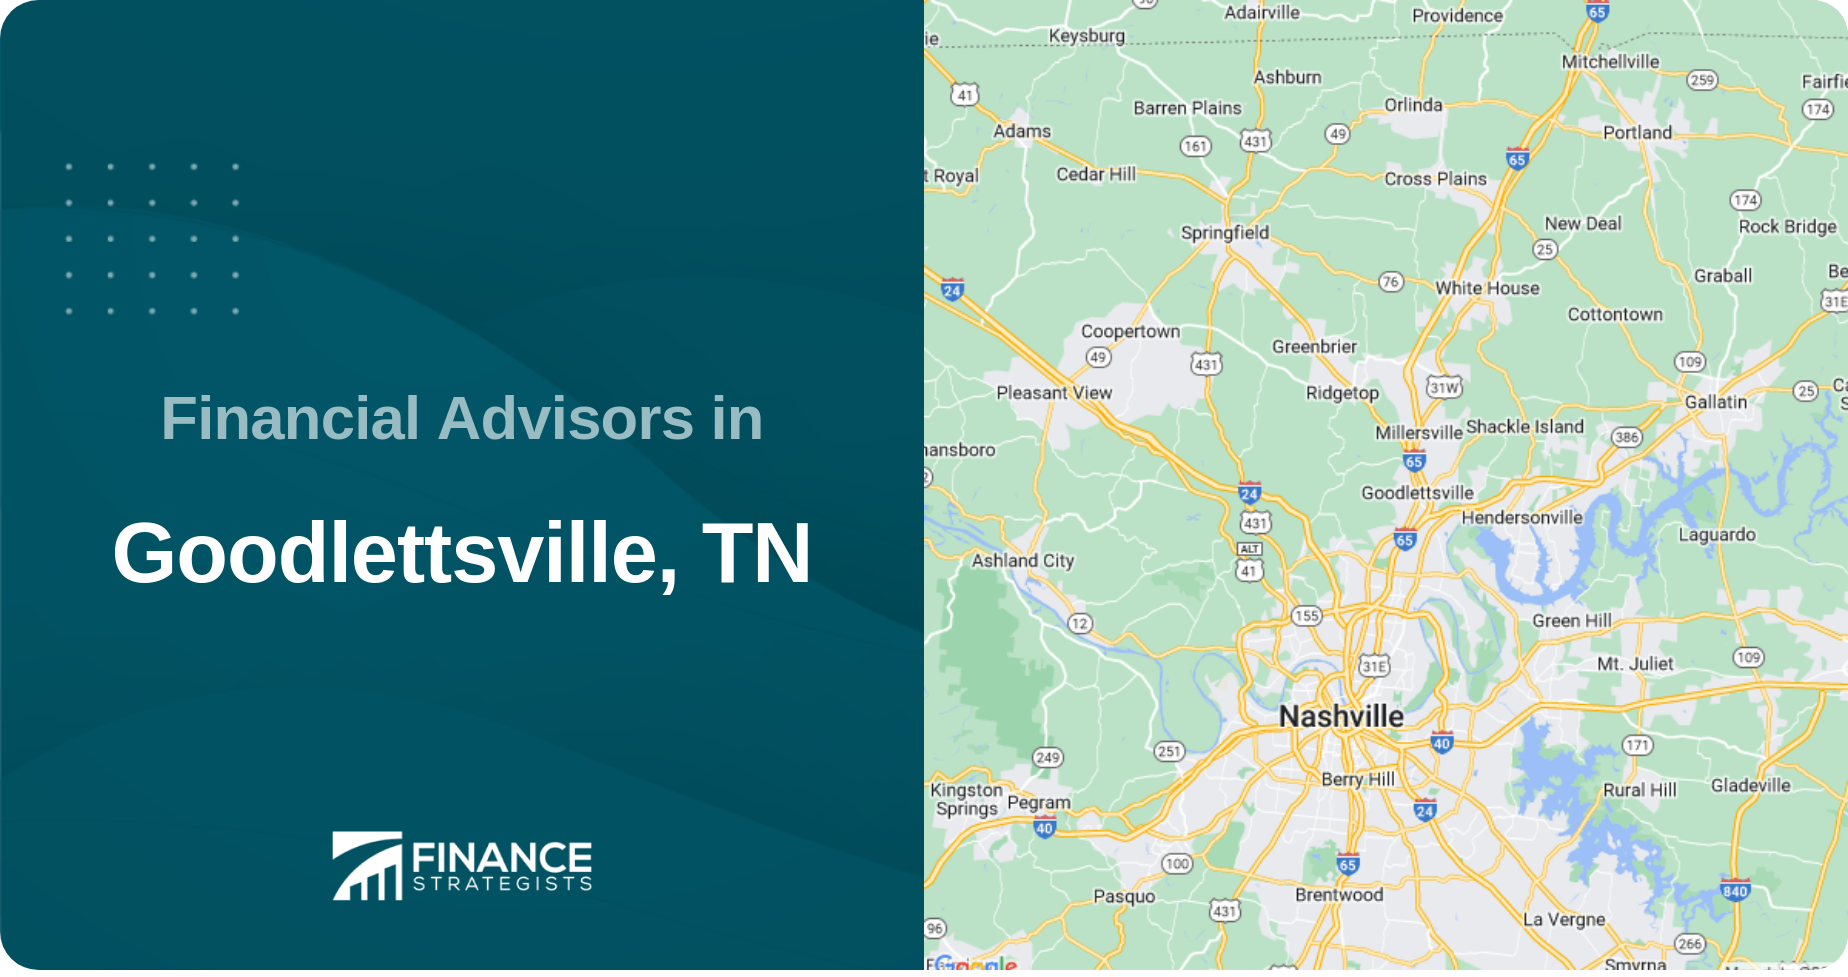 Financial Advisors in Goodlettsville, TN